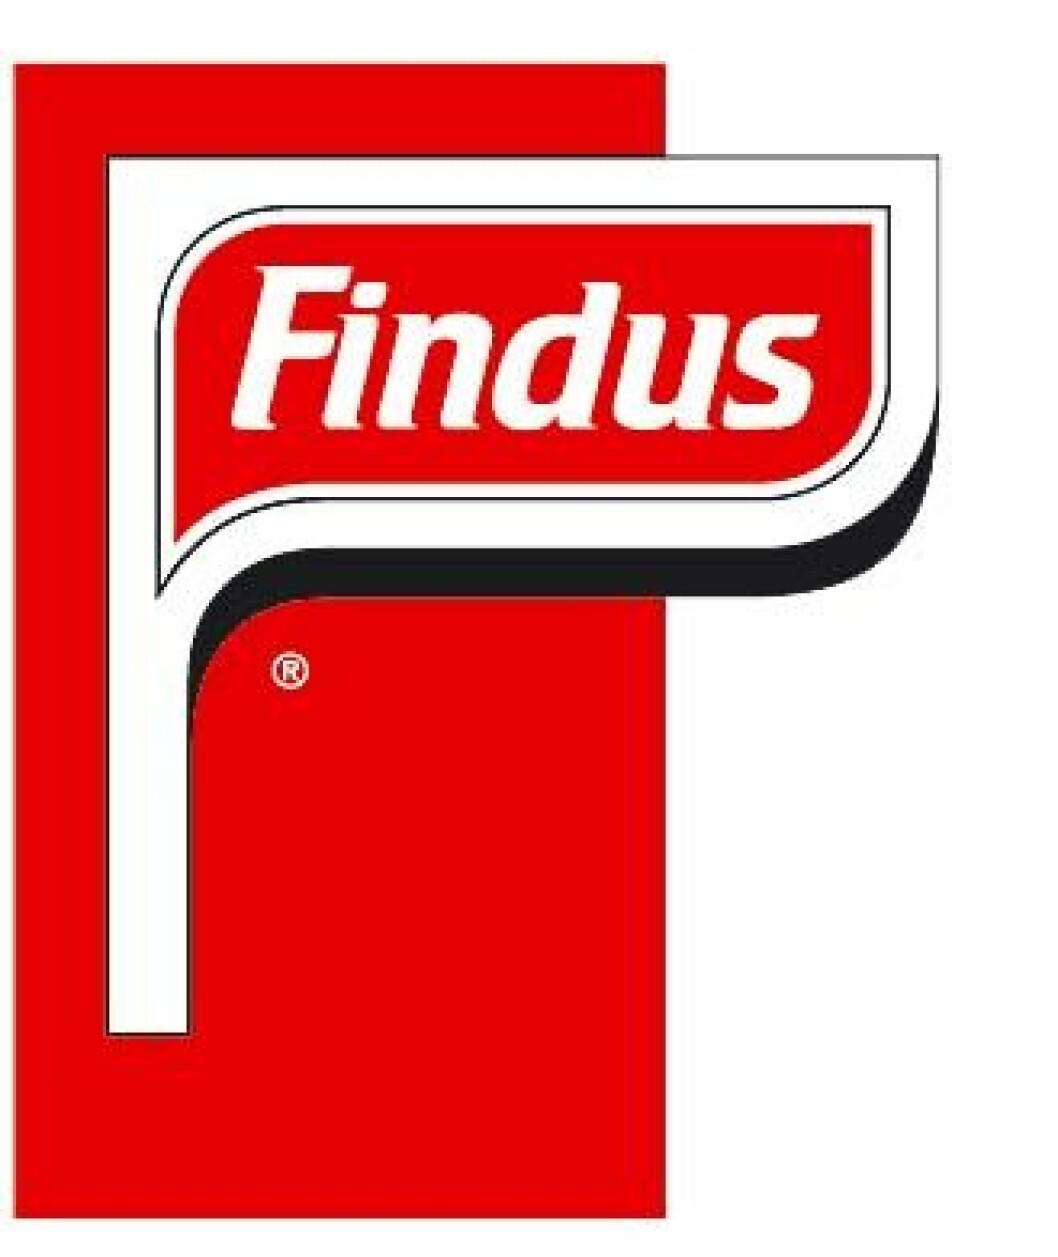 findus logo